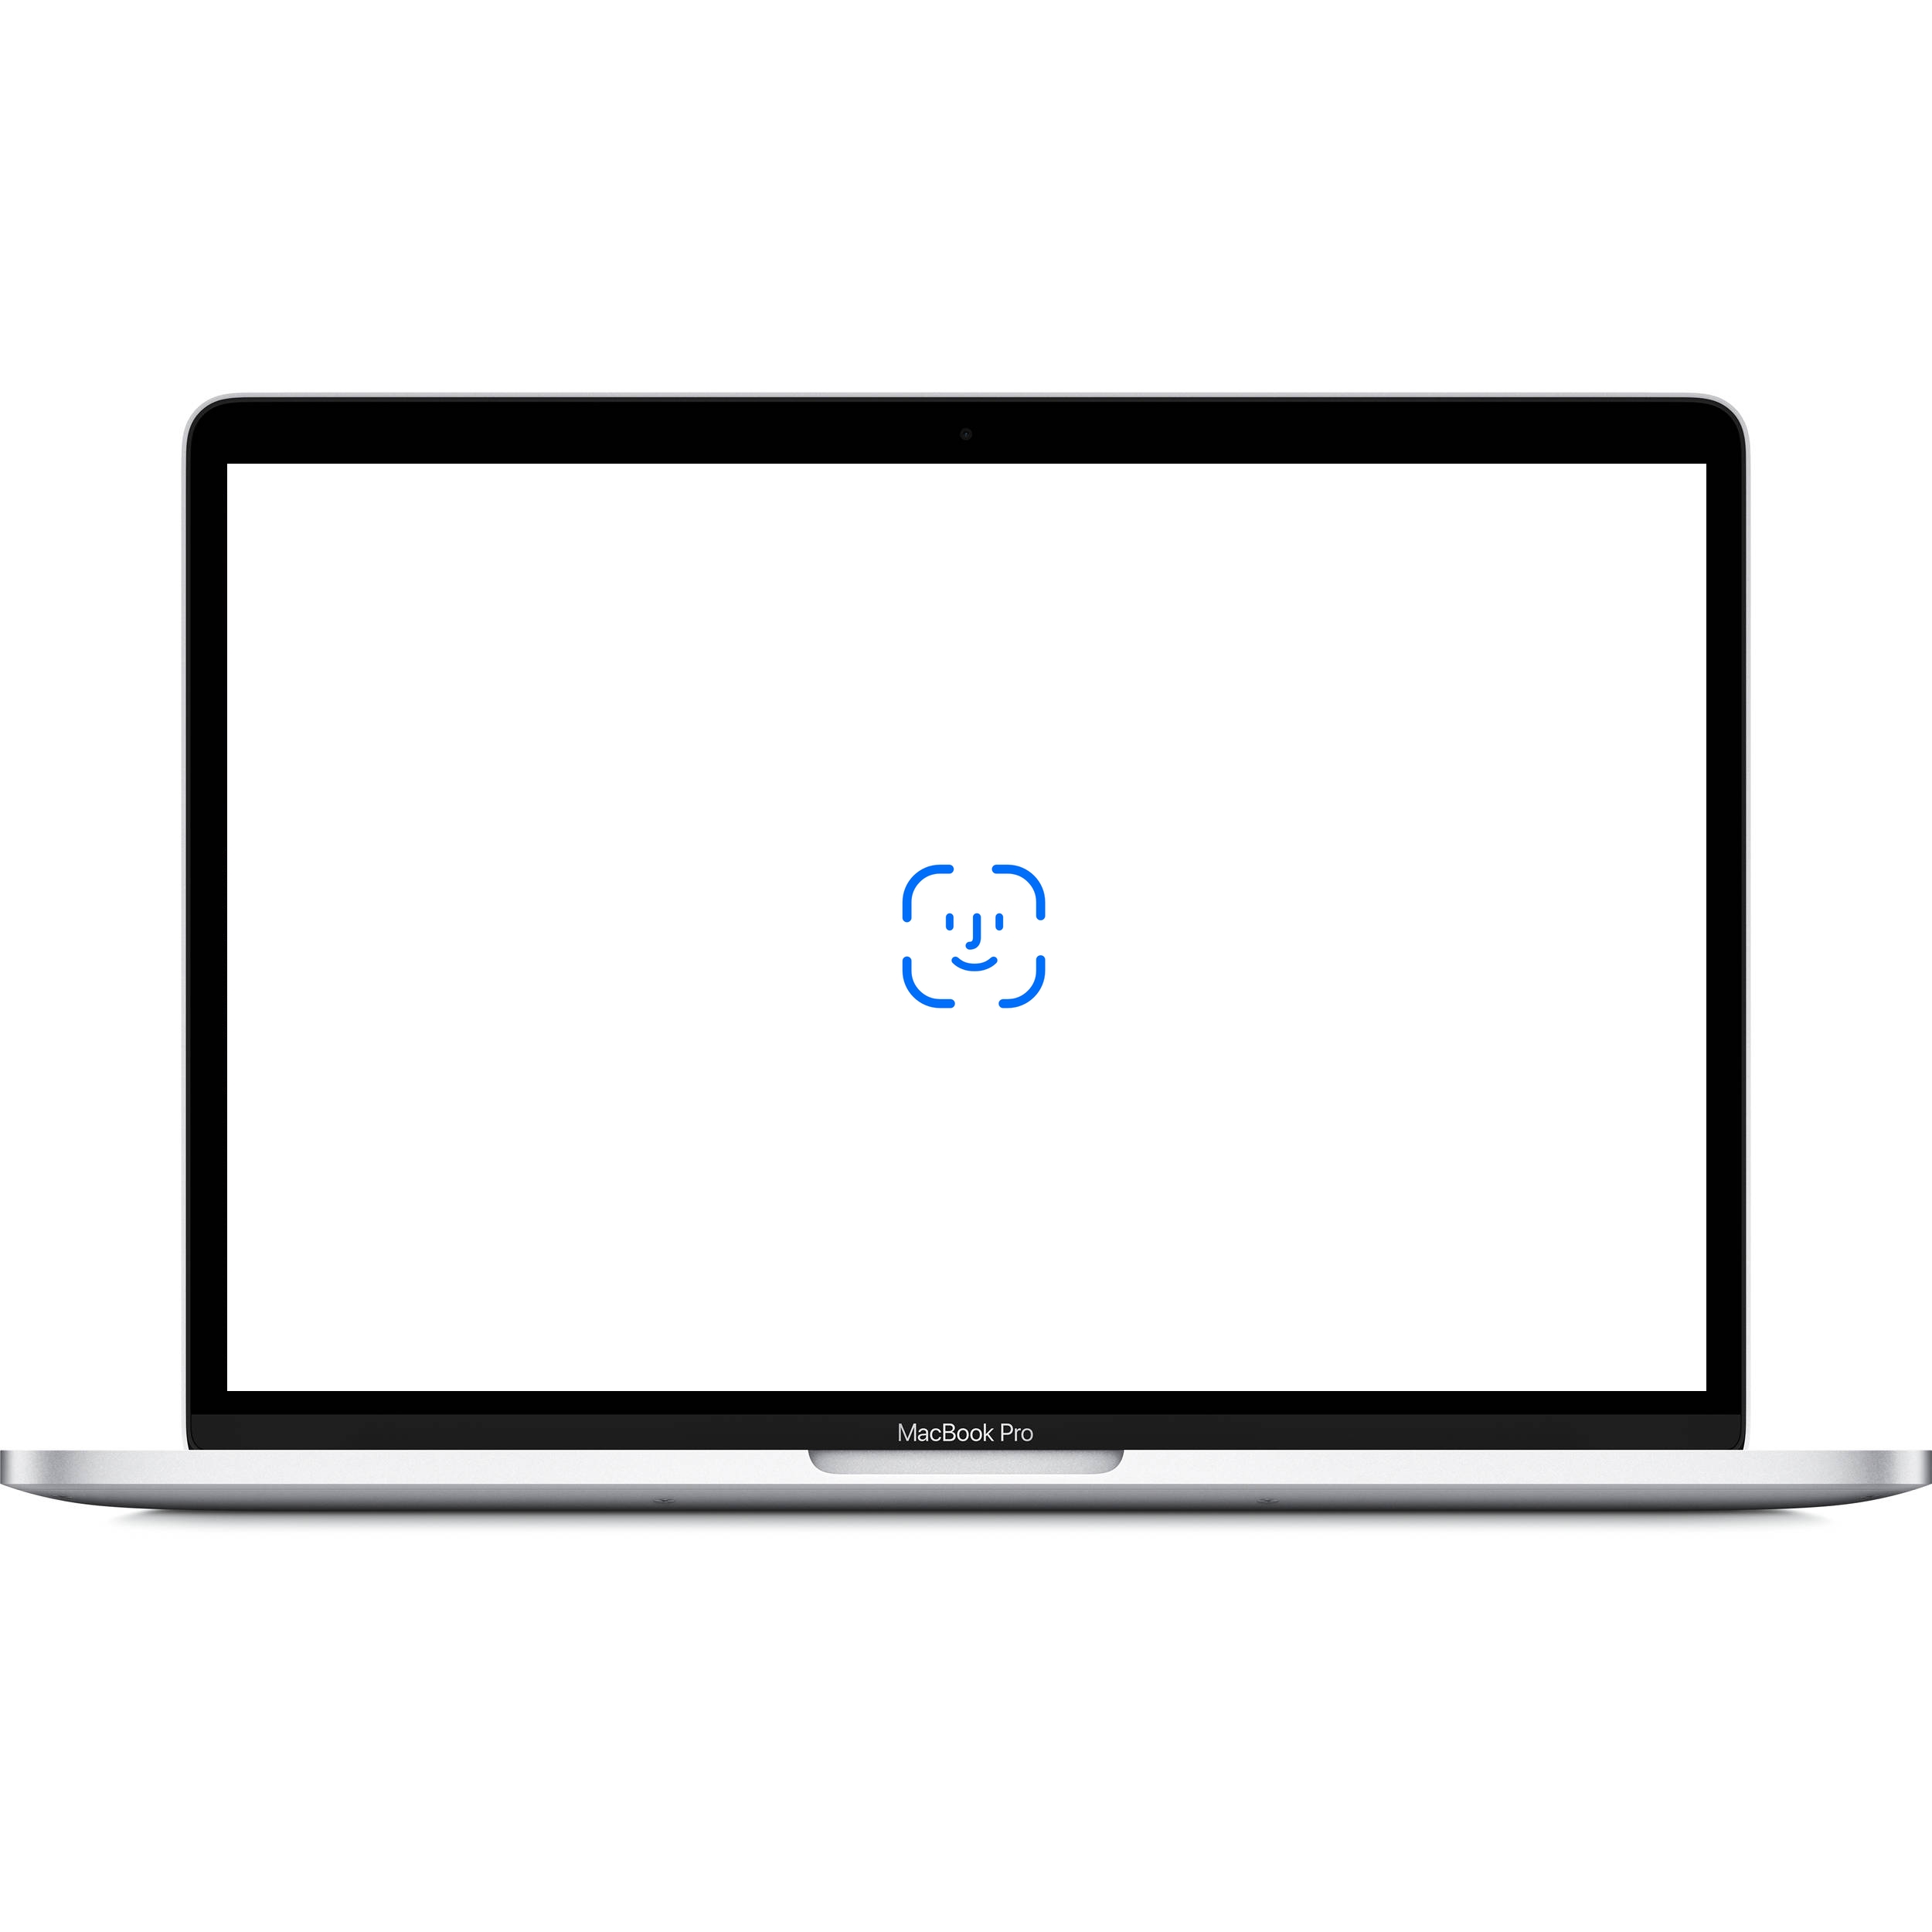 2019年 Mac にはFace IDが搭載が高い。